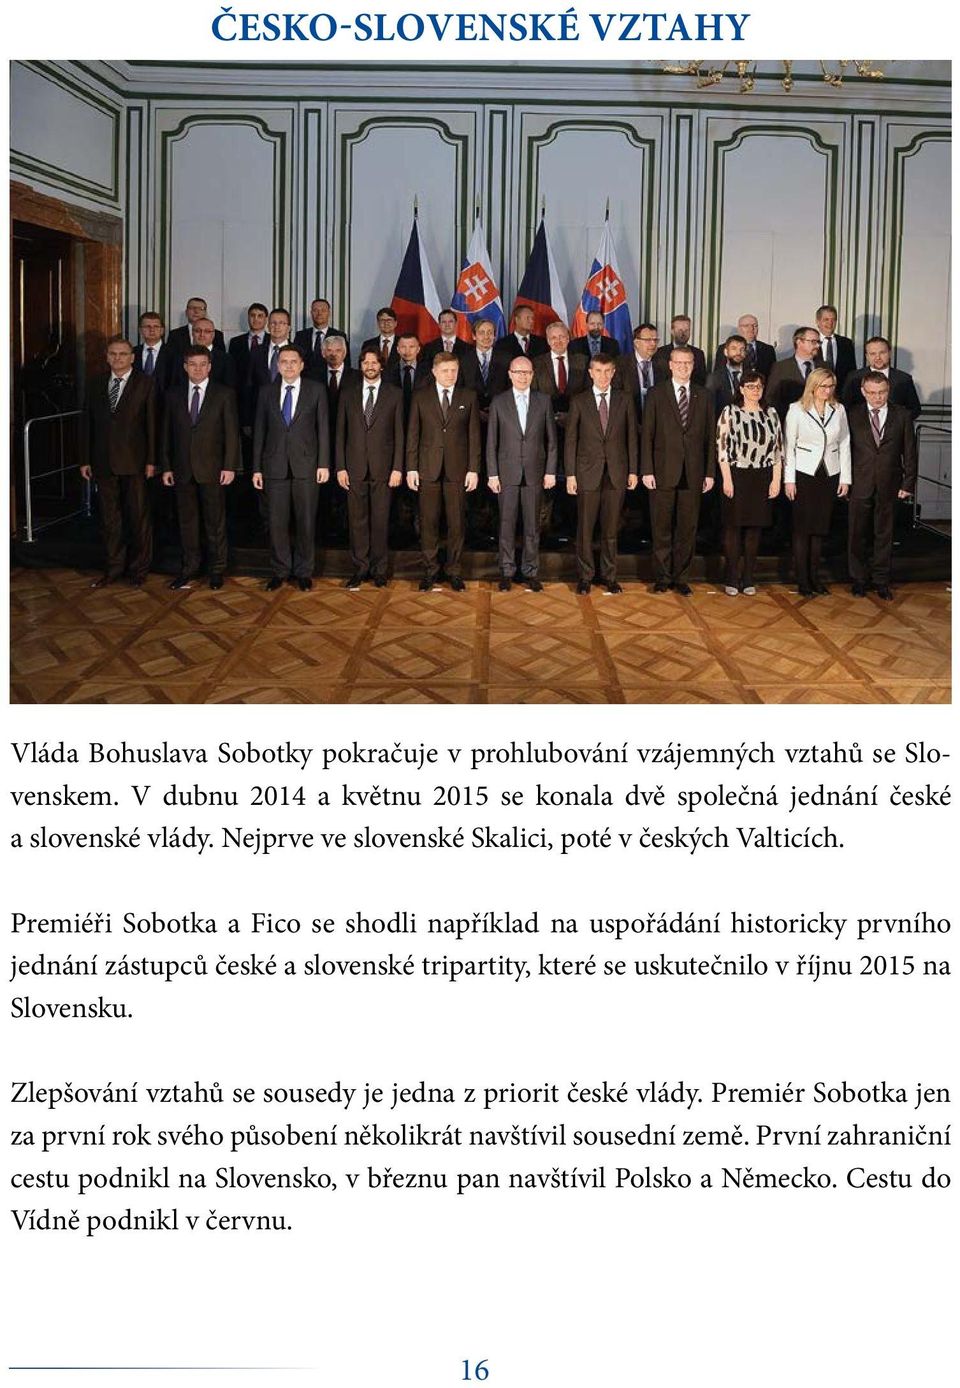 Premiéři Sobotka a Fico se shodli například na uspořádání historicky prvního jednání zástupců české a slovenské tripartity, které se uskutečnilo v říjnu 2015 na Slovensku.